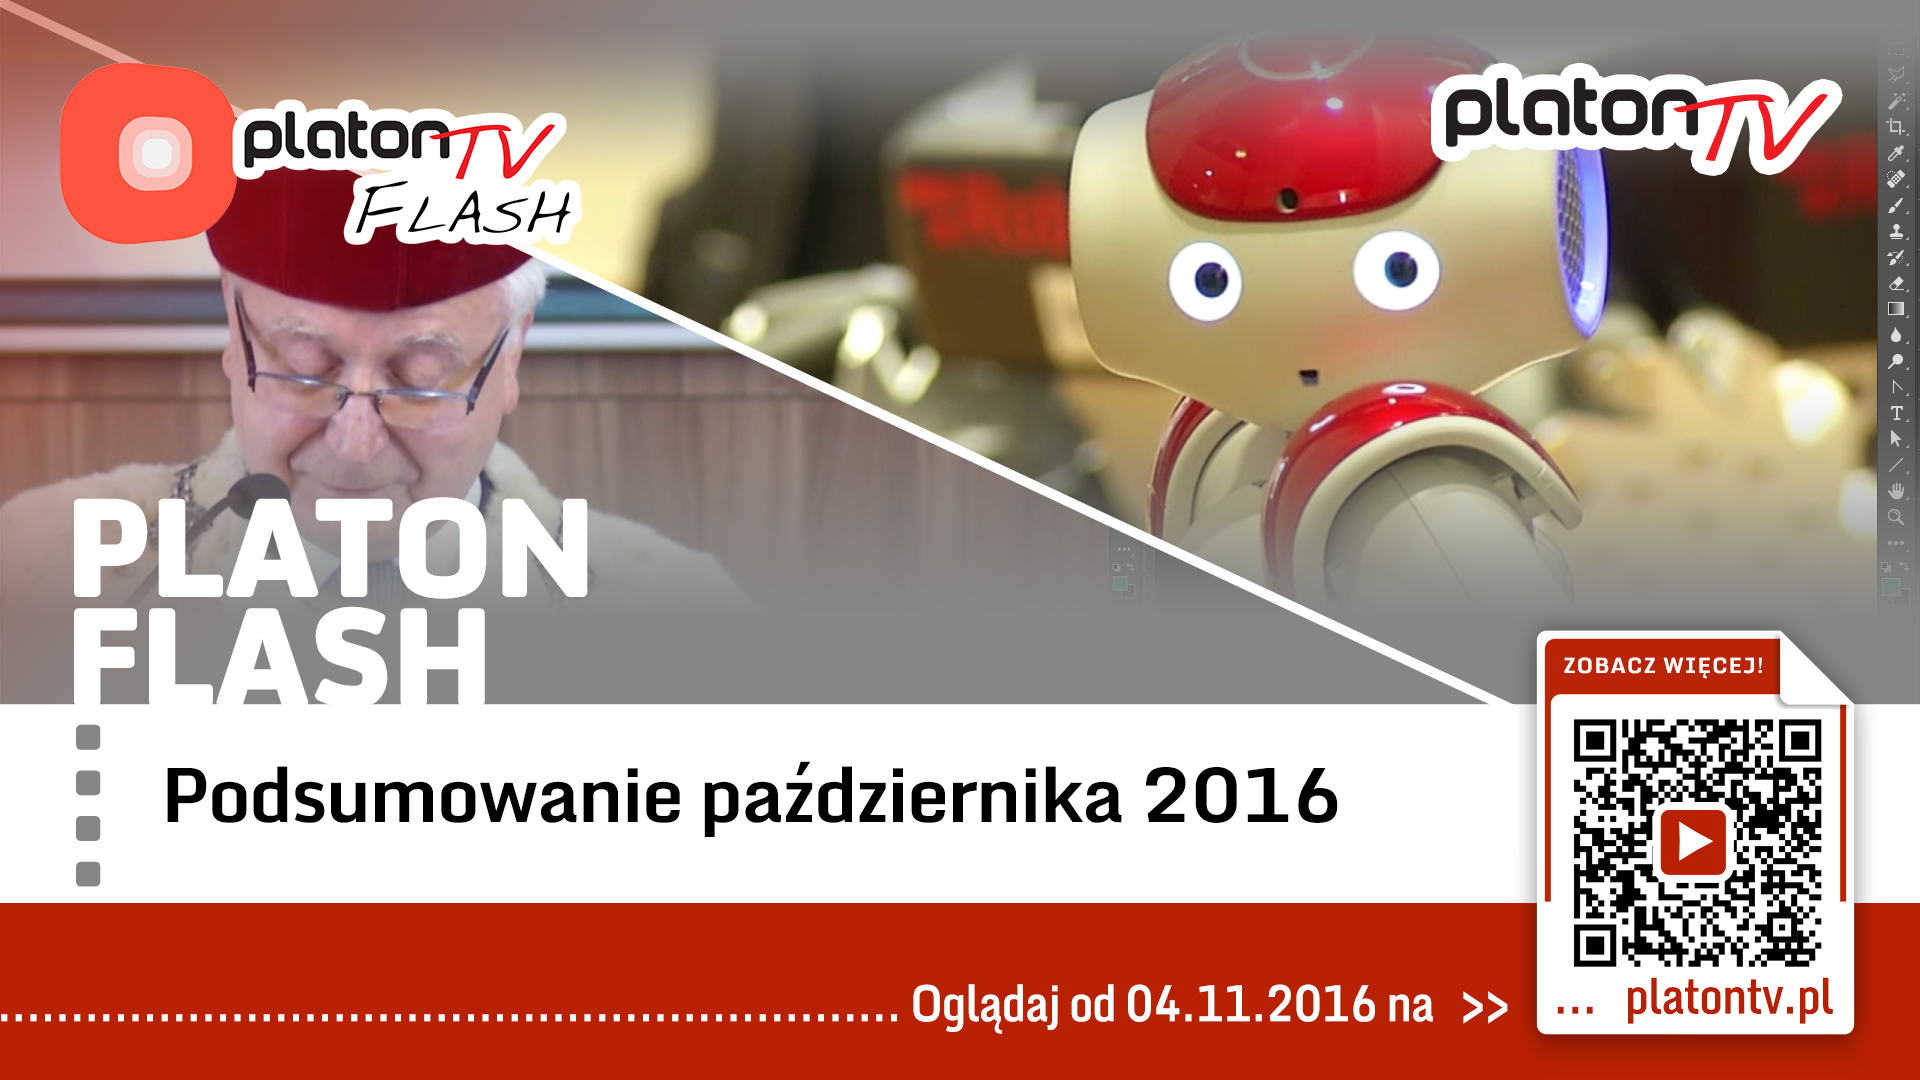 PlatonTV: Flash październik 2016